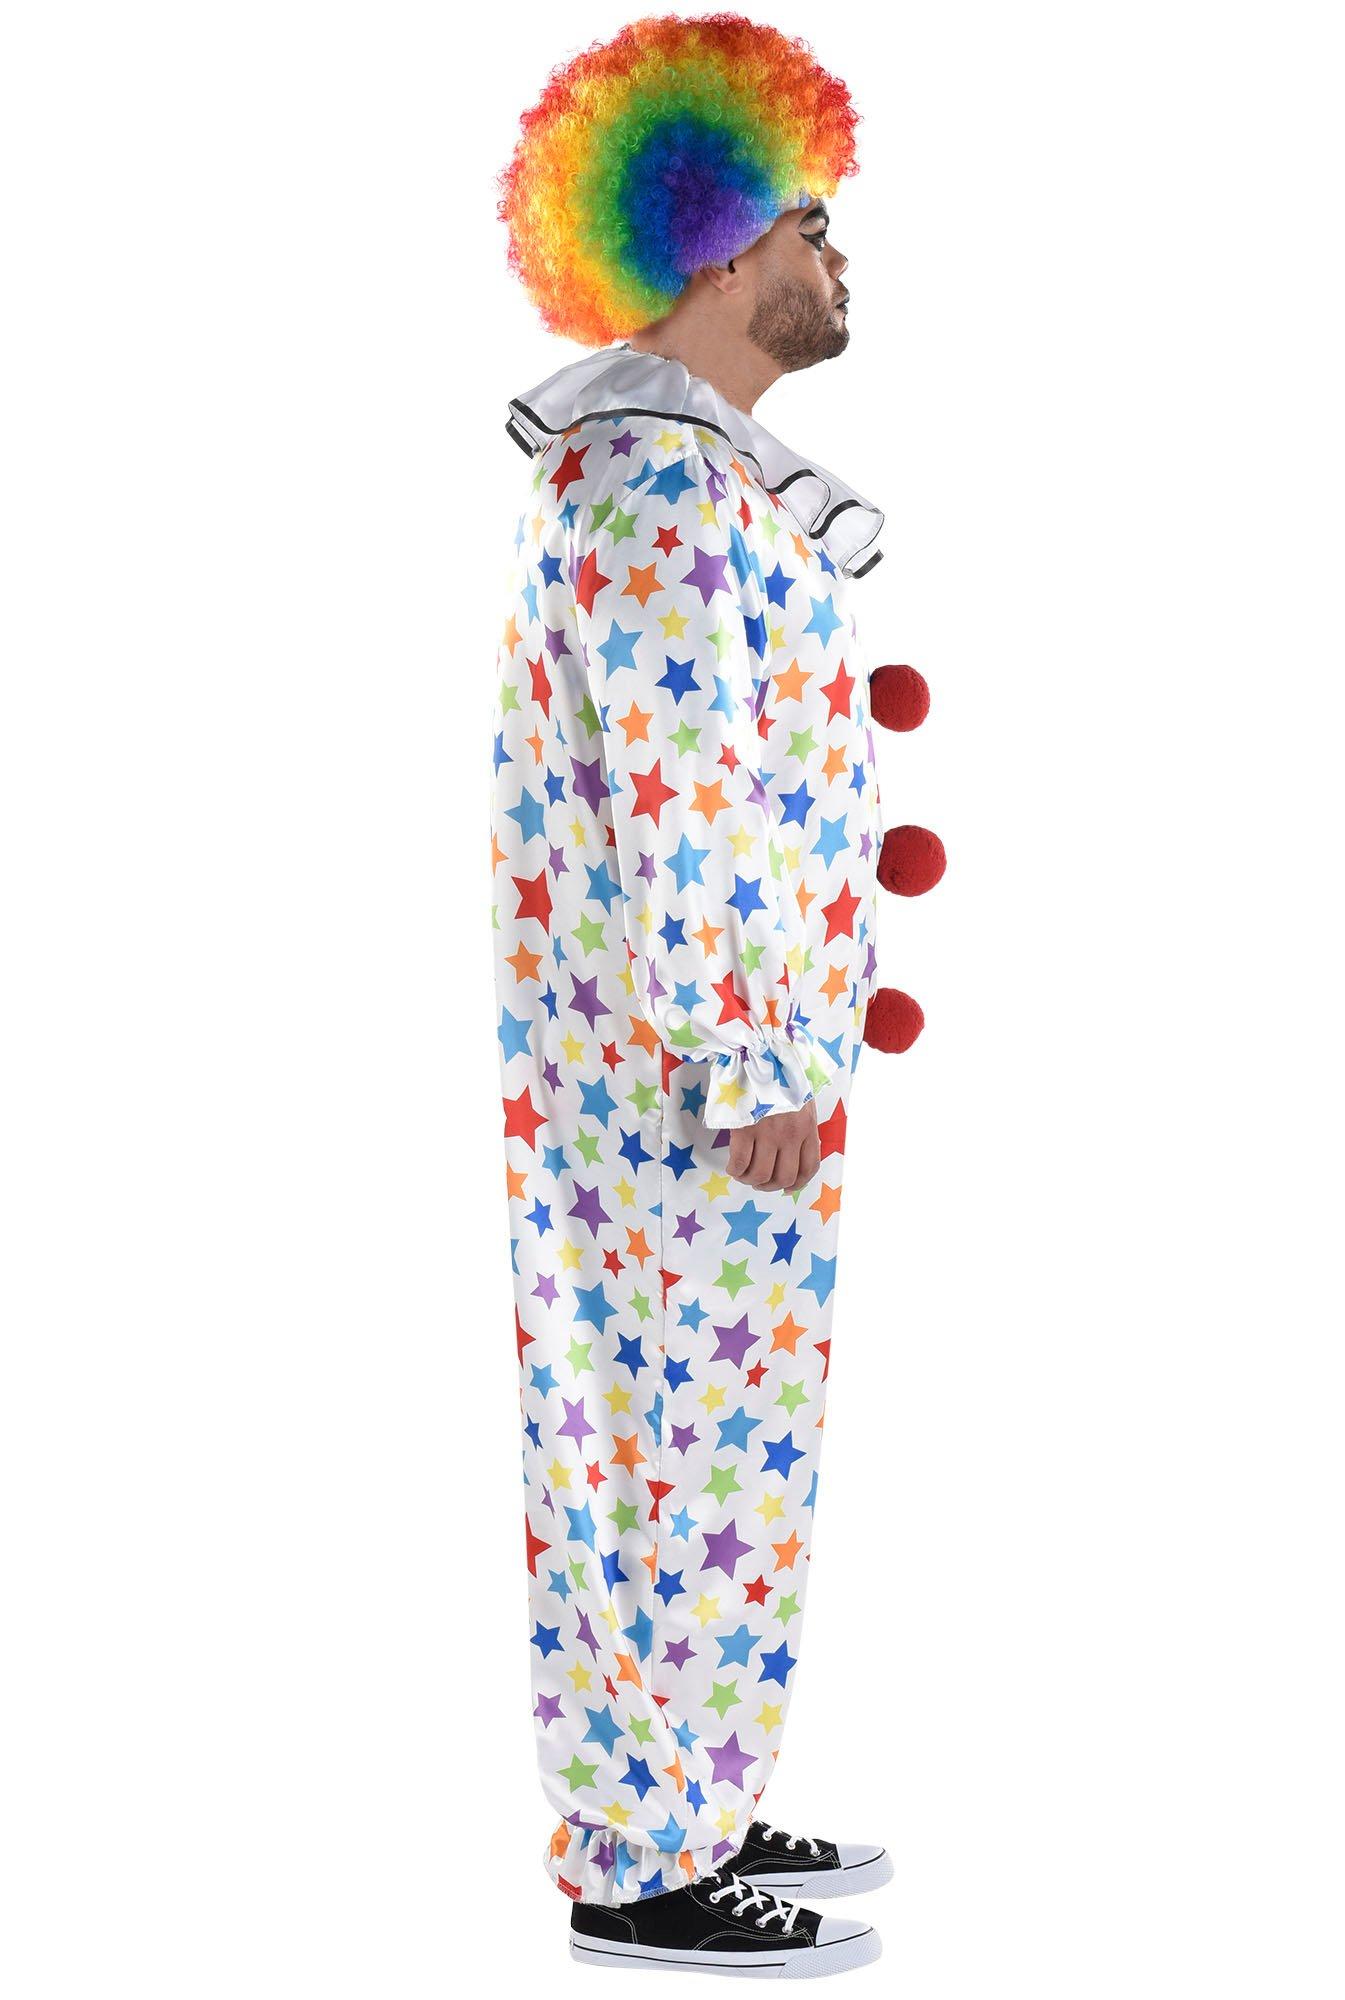 Adult Friendly Clown Plus Size Costume